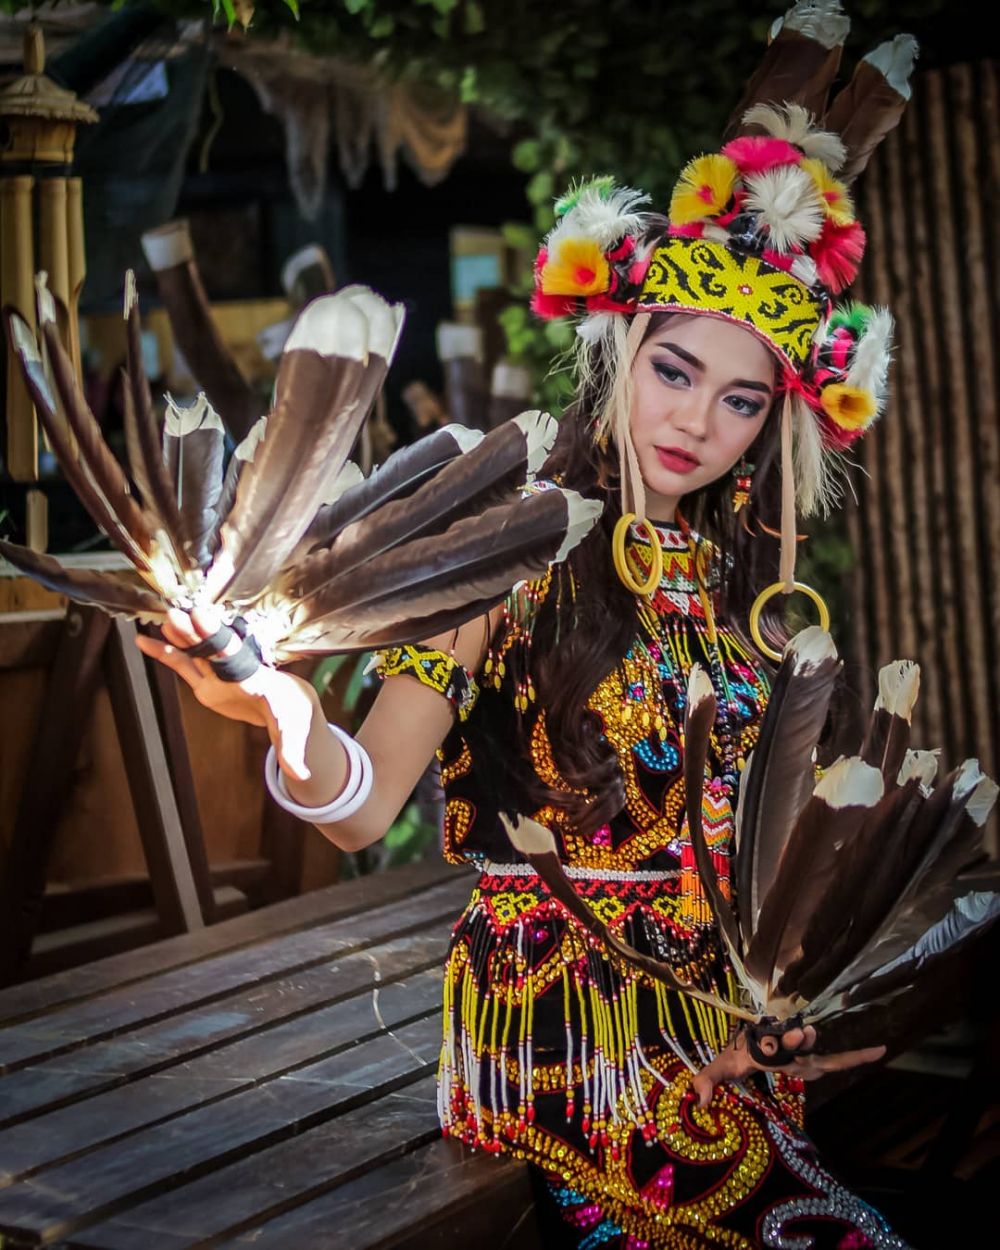 5 Wisata Festival Budaya Indonesia Yang Terpopuler Dengan Makna Yang Dalam